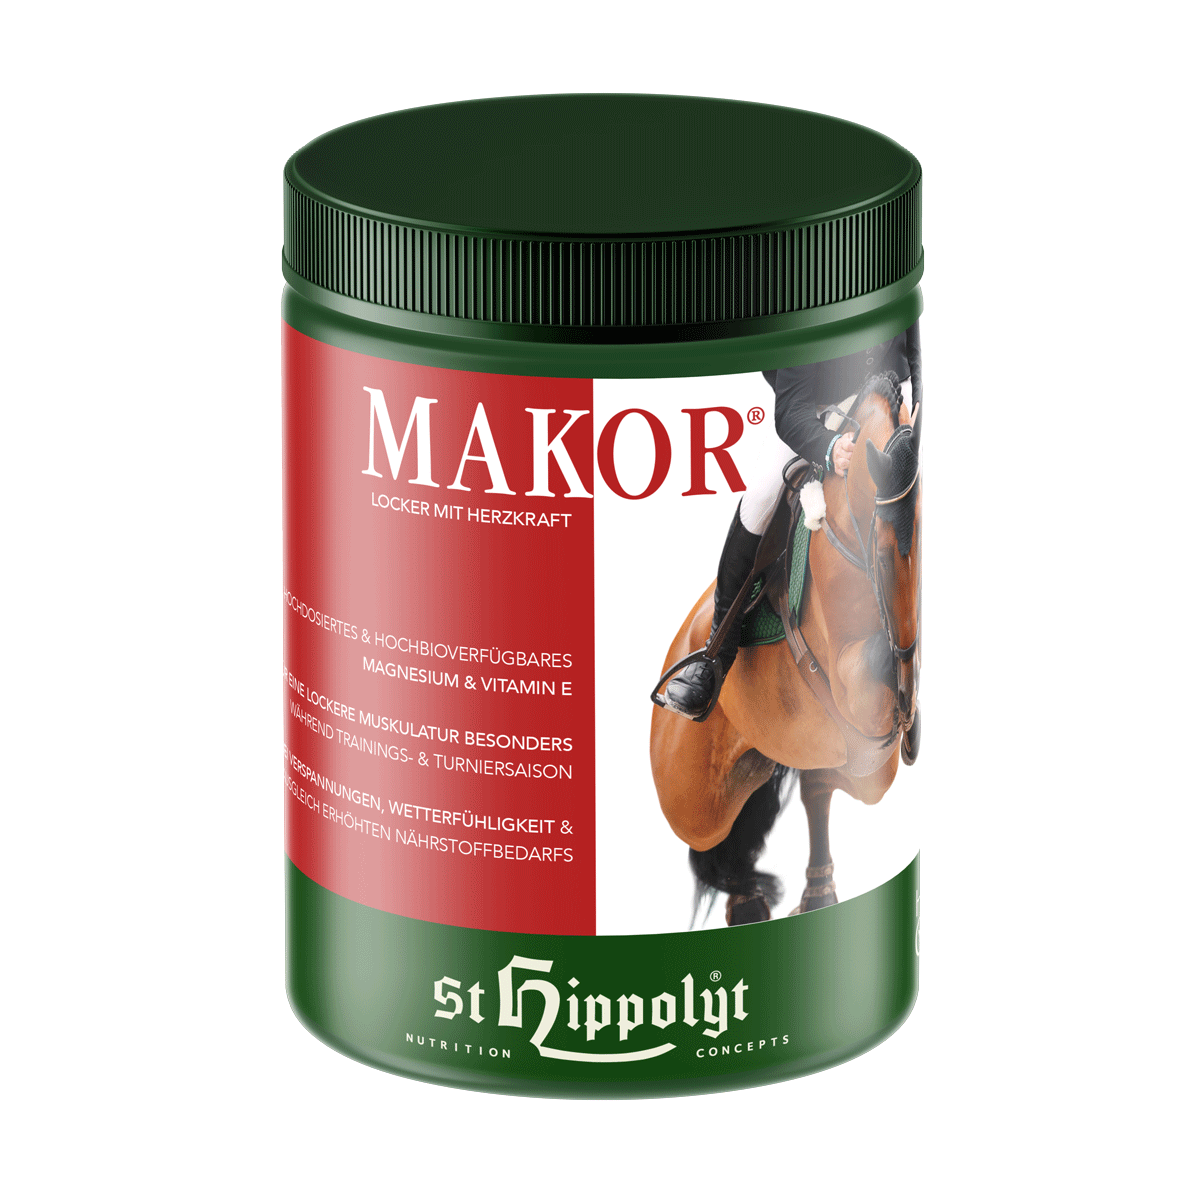 St.Hippolyt - Makor - für eine lockere Muskulatur -  mit Magnesium und Vitamin E